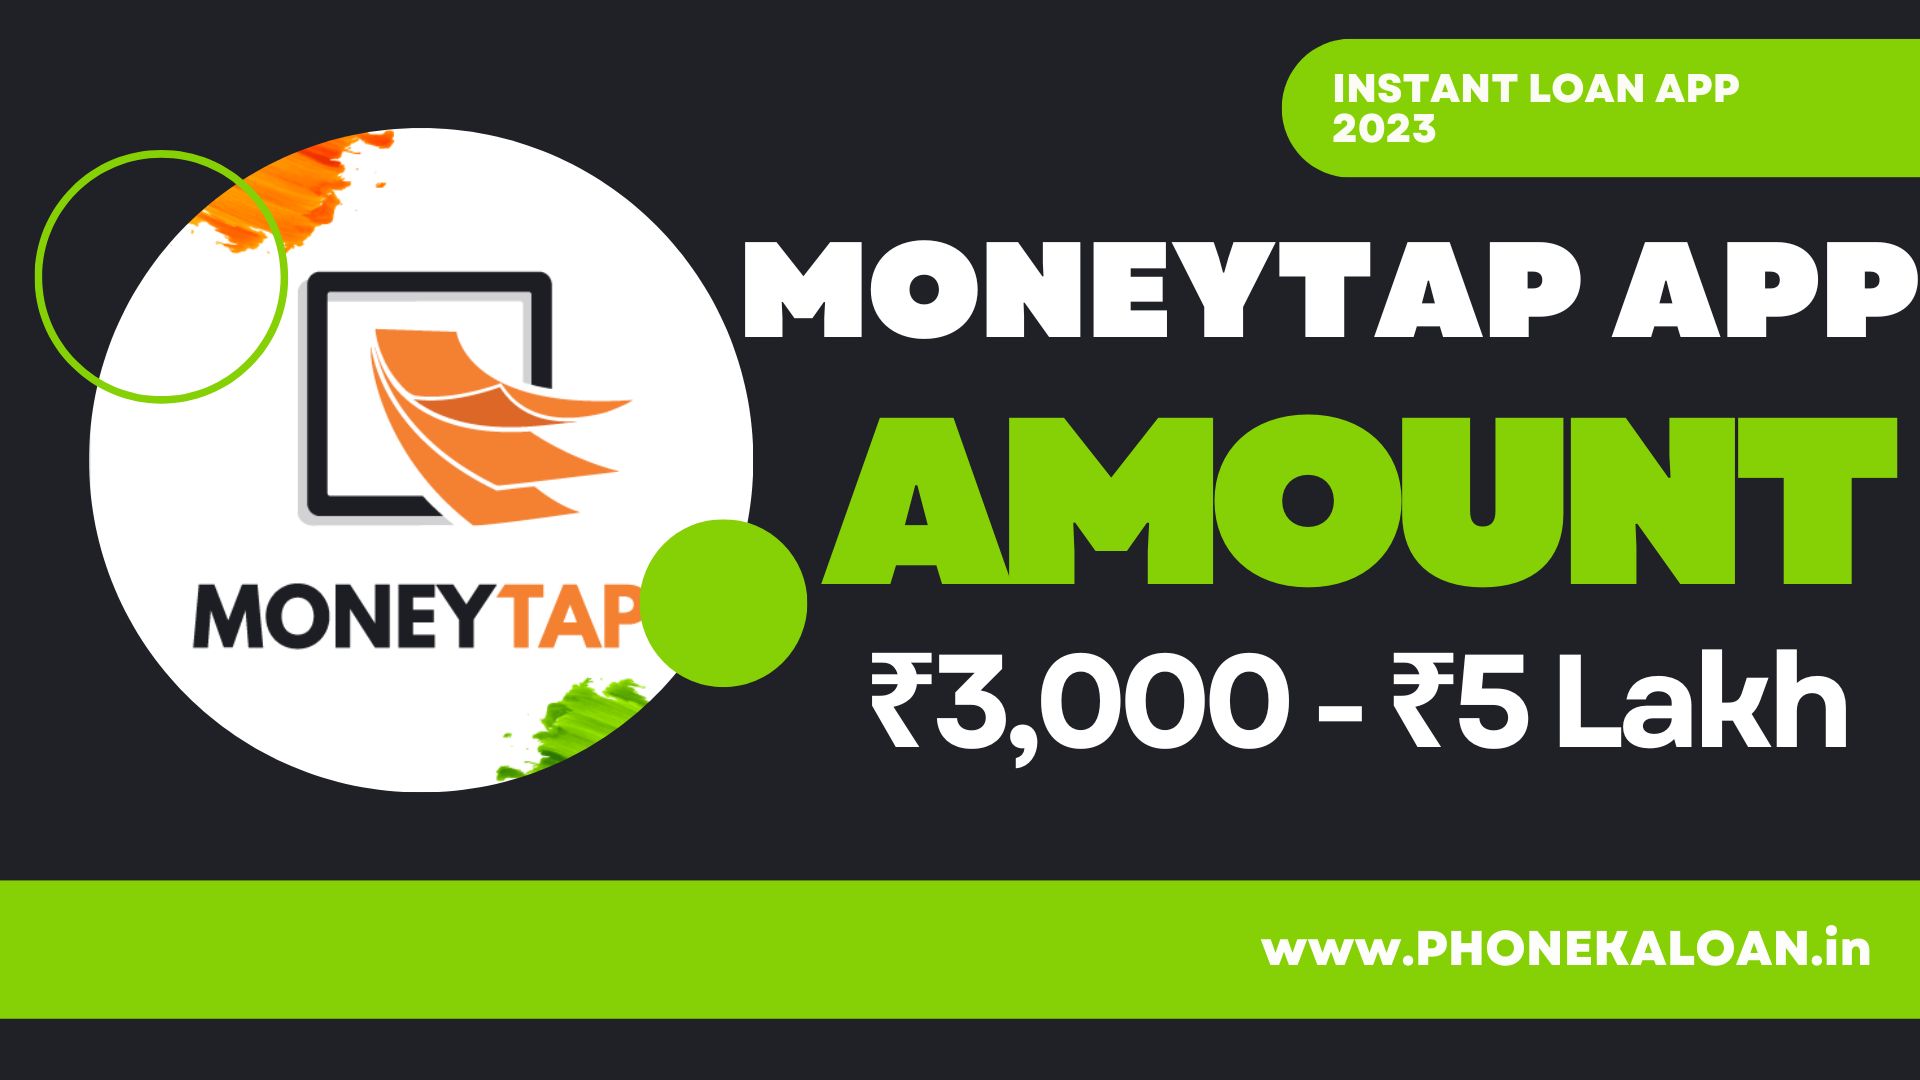 MoneyTap Loan App Loan Amount